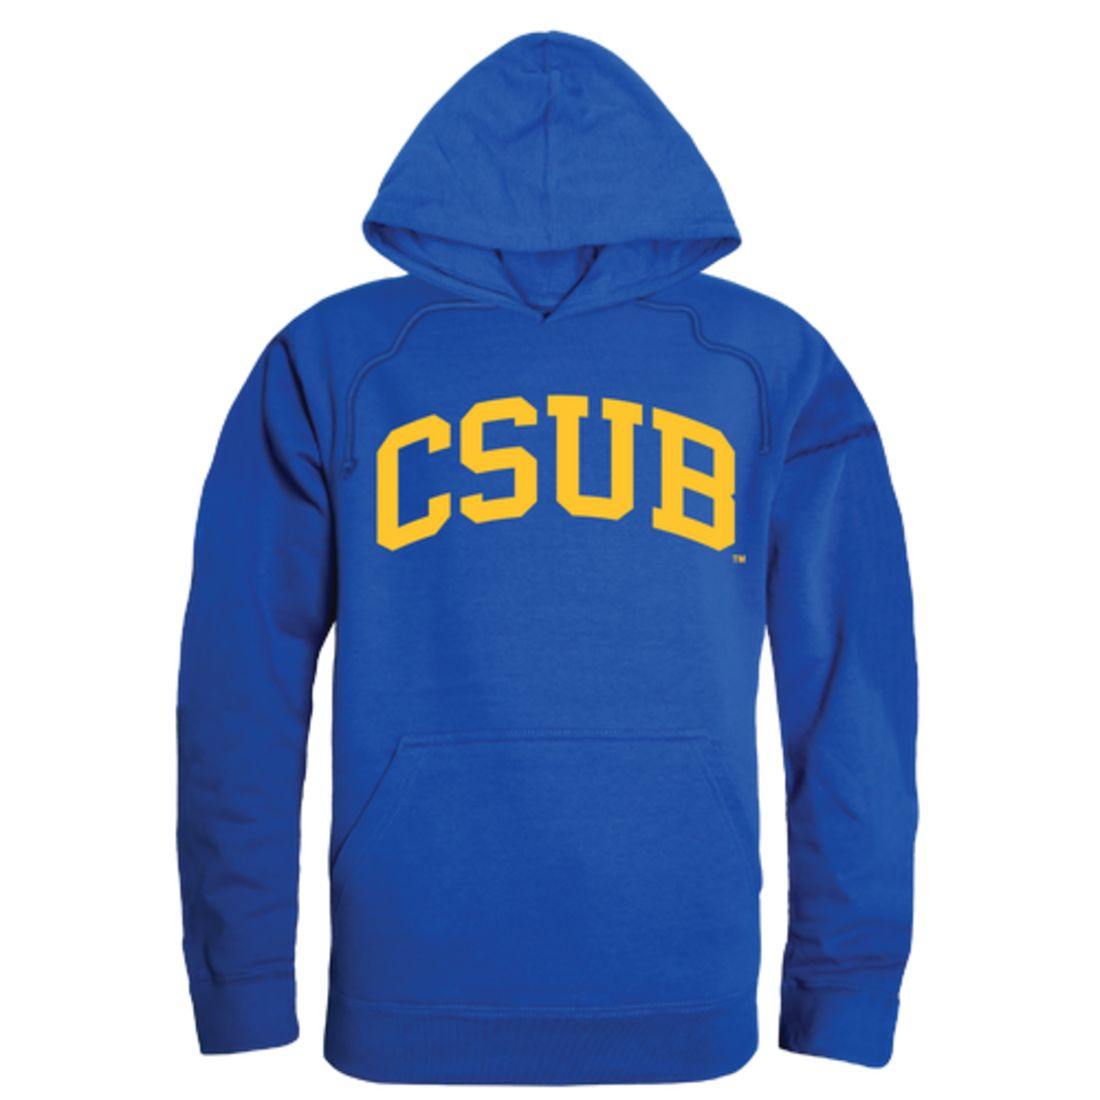 CSUB California State University Bakersfield Roadrunners College Hoodie Sweatshirt Royal-Campus-Wardrobe